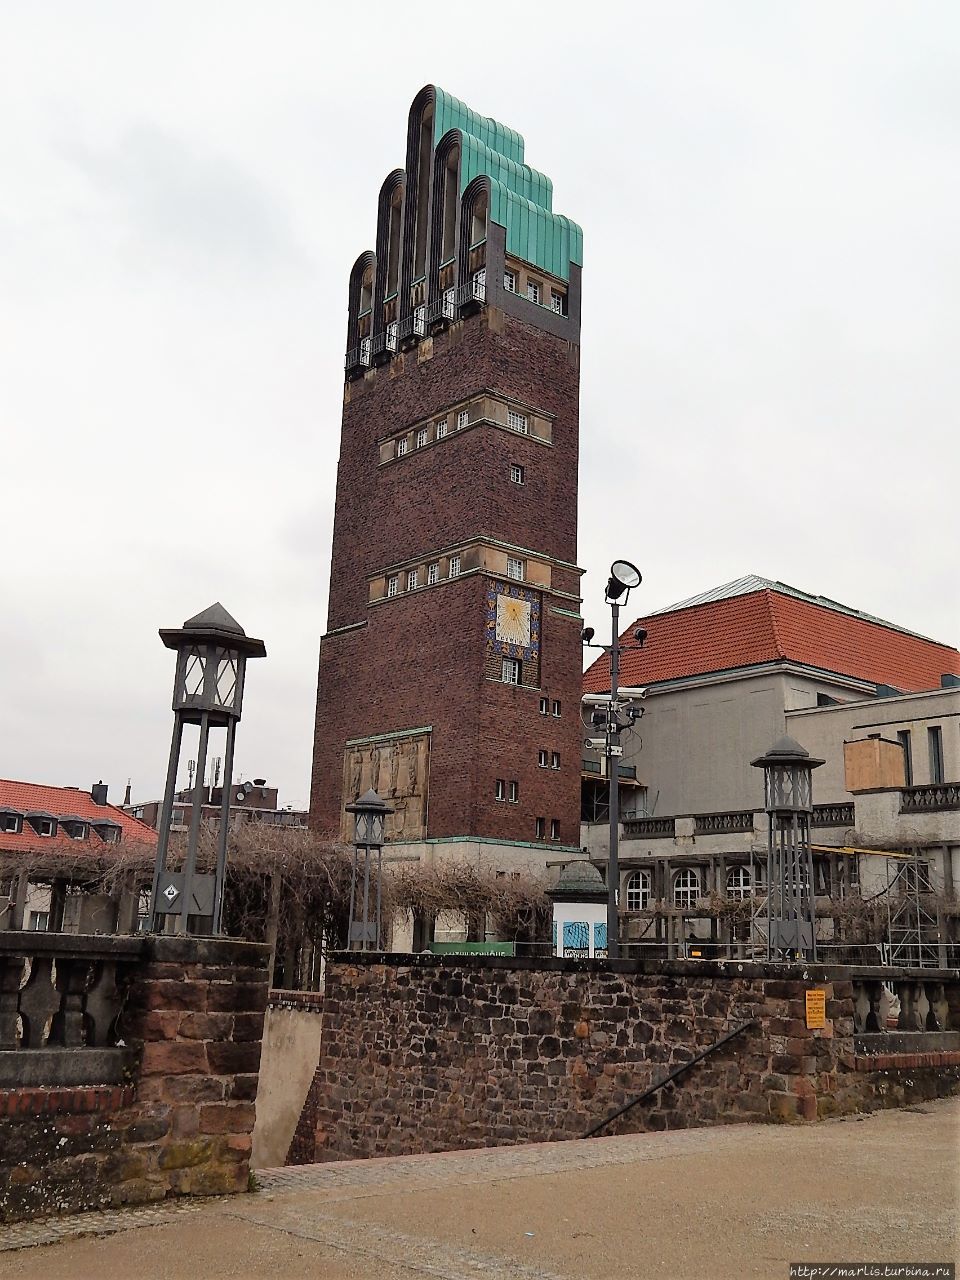 Последняя работа Ольбриха в Дармштадте — Выставочный зал и Свадебная башня (1907–1908). Крыша башни имеет форму руки, десница Божия, охраняющая Дармштадт Дармштадт, Германия